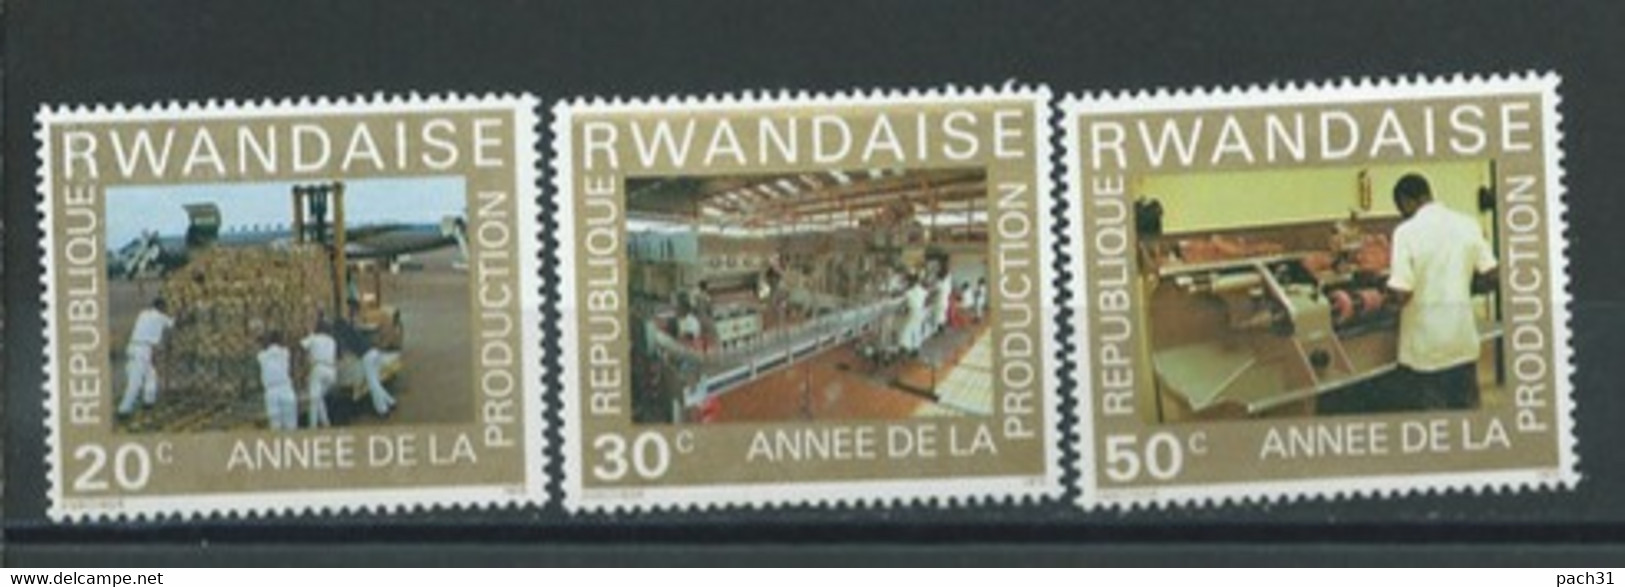 Rwanda  Lot De Timbres   Thème   Année De La Production - Collections